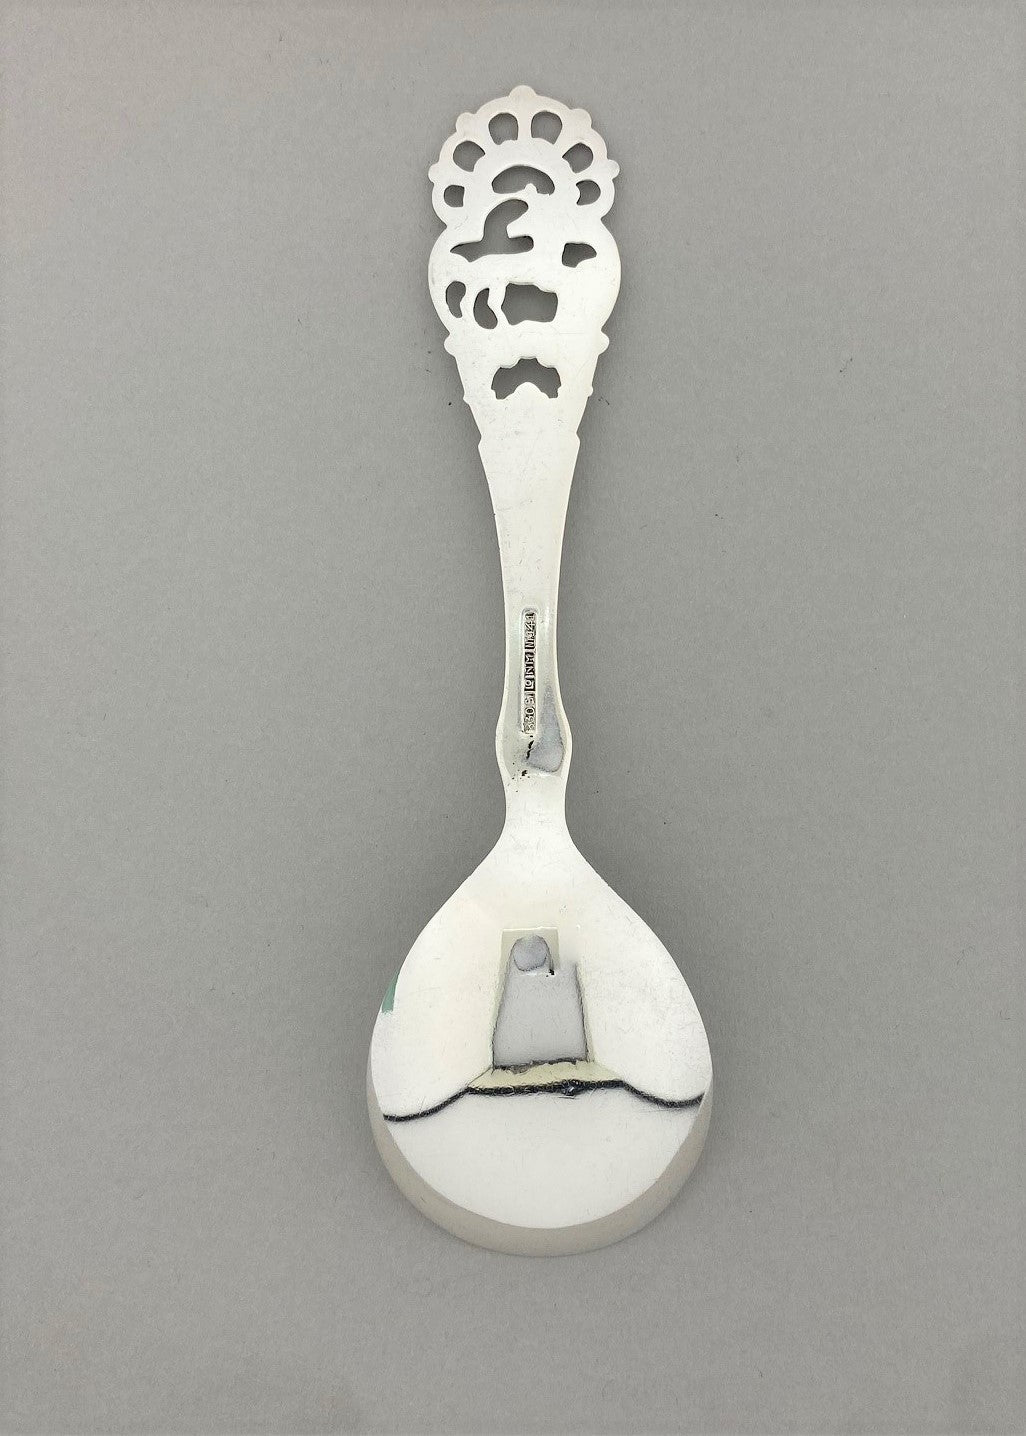 Vintage Original spoon no 141 jam spoon